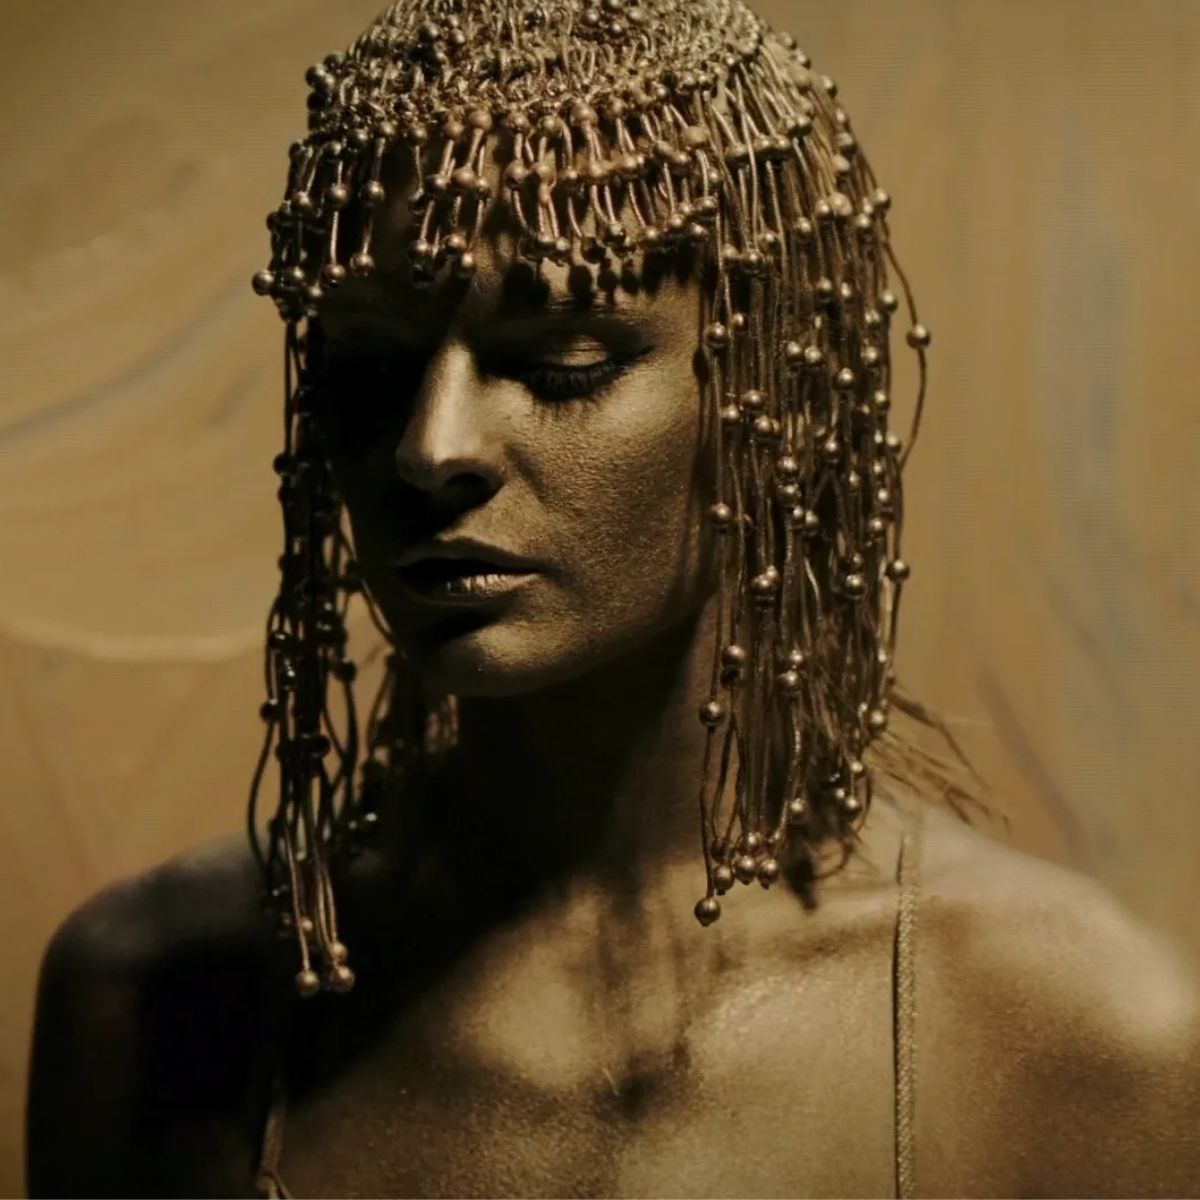 Imagem da cantora Dolores O'Riordan para o vídeo musical "Zumbi" do The Cranberries